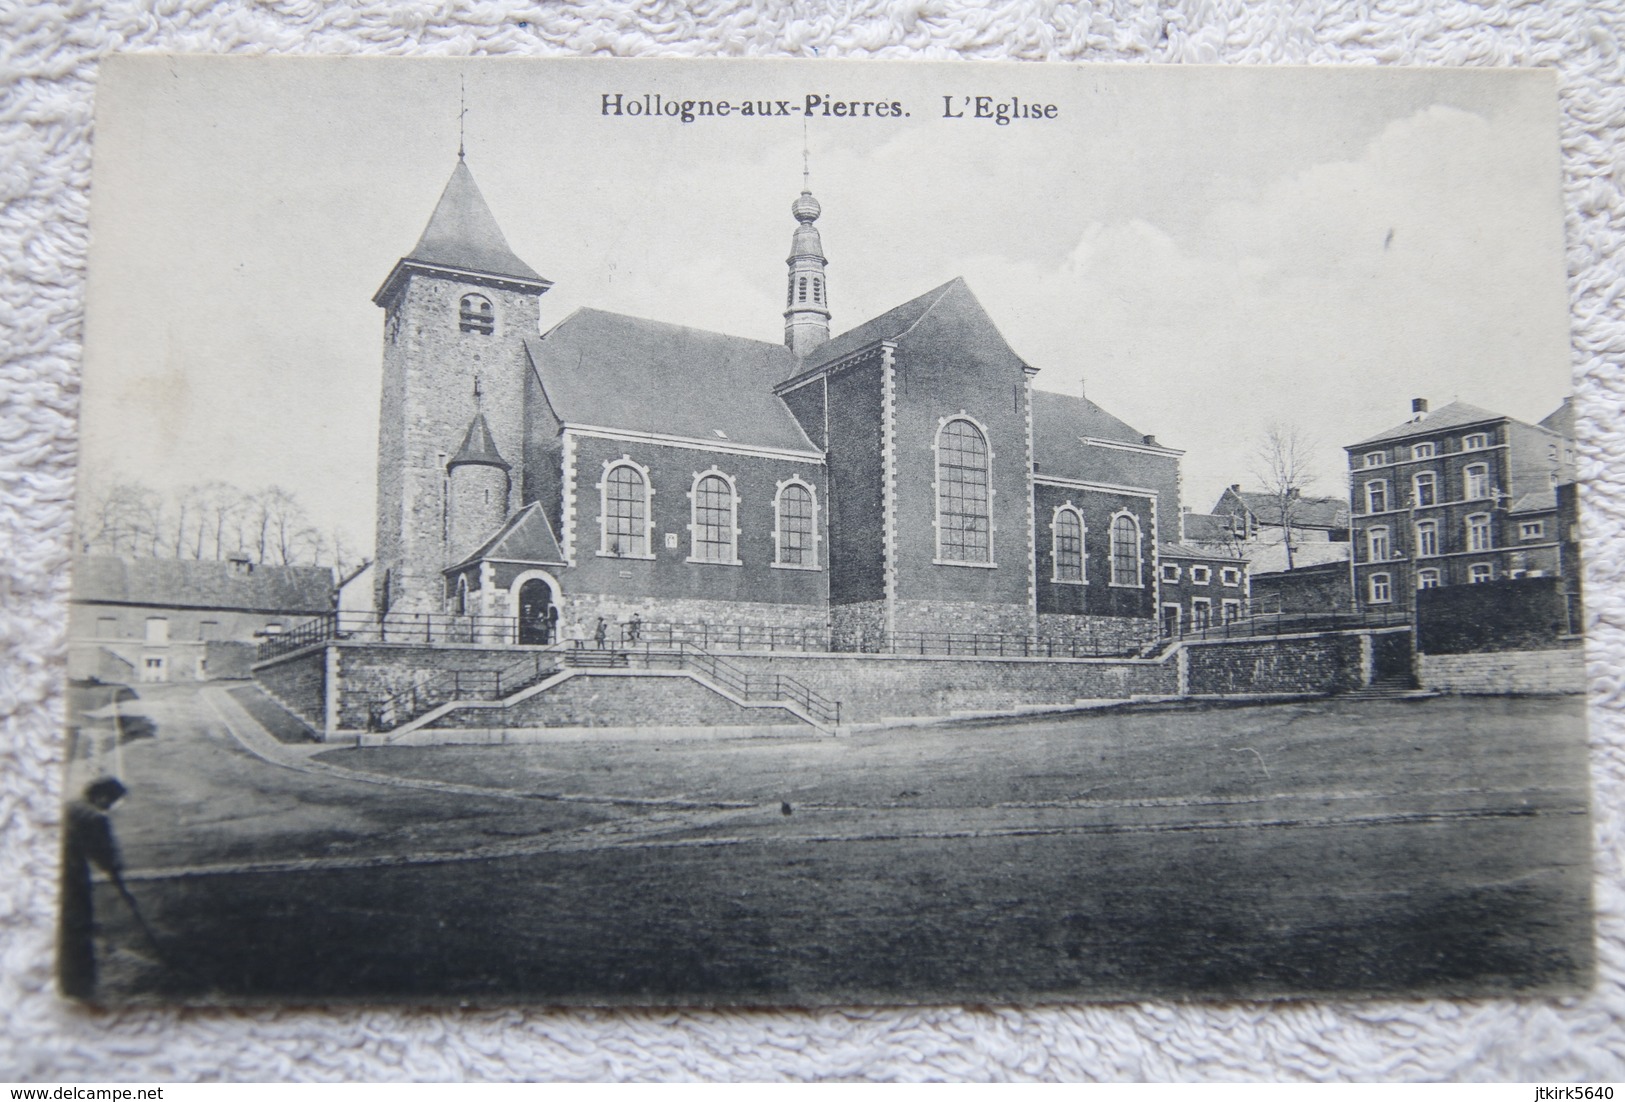 Hollogne-aux-Pierres "L'église" - Grâce-Hollogne